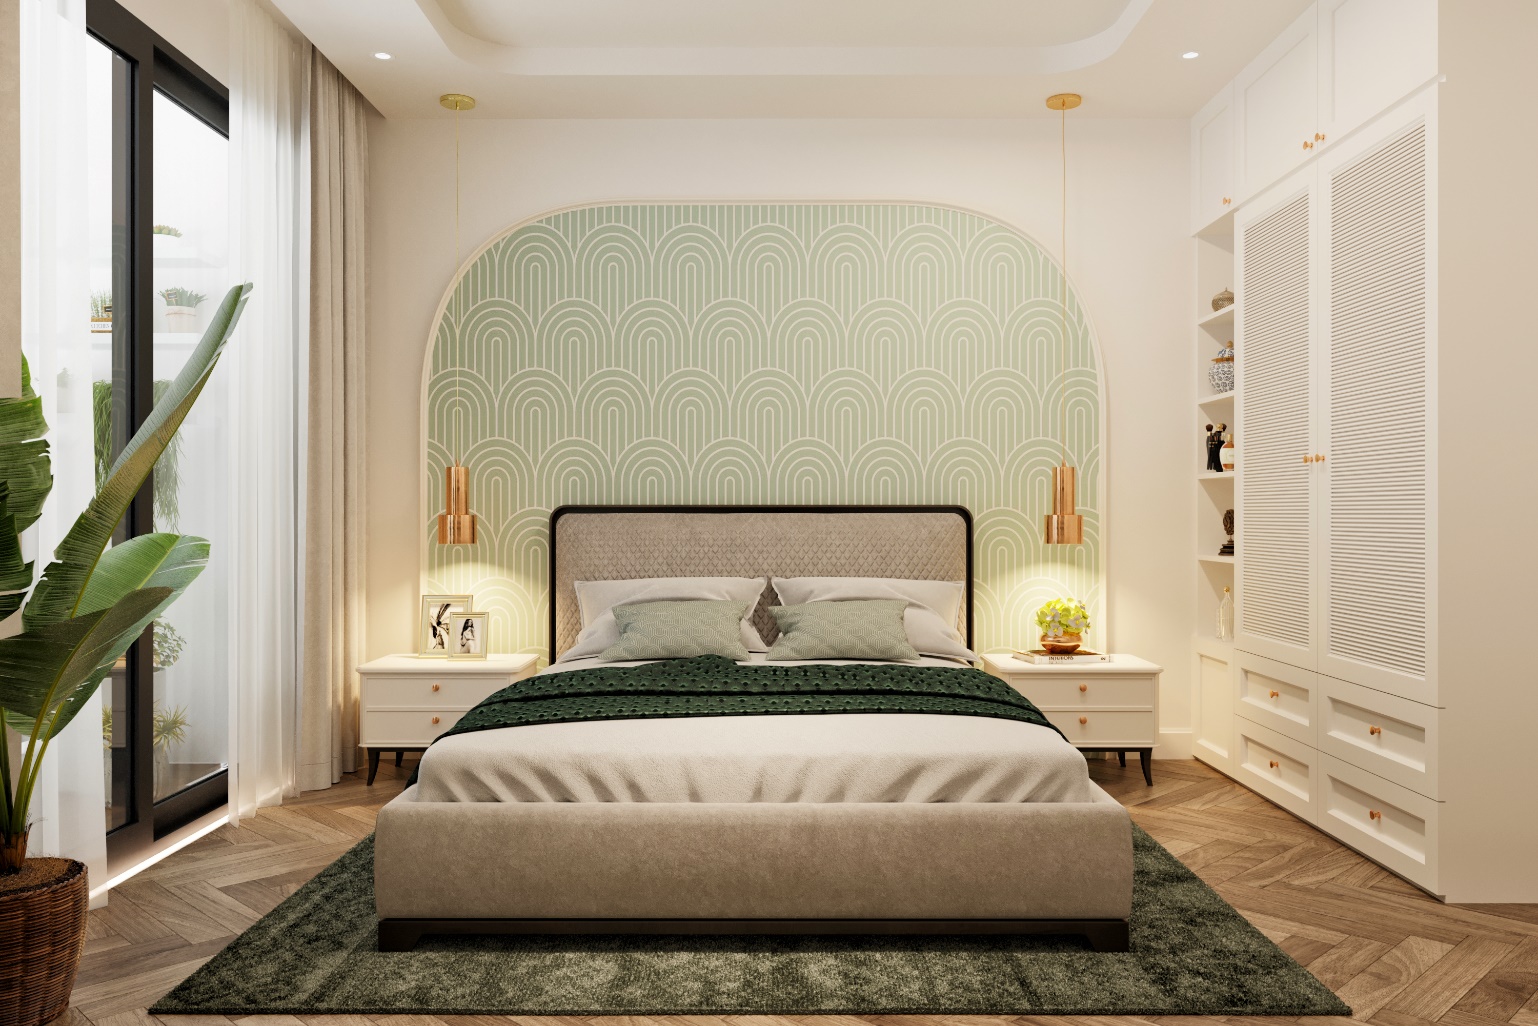 Căn hộ 3 phòng ngủ tại BerRiver Jardin: Giải pháp căn hộ tối ưu cho gia đình đa thế hệ - Ảnh 1.